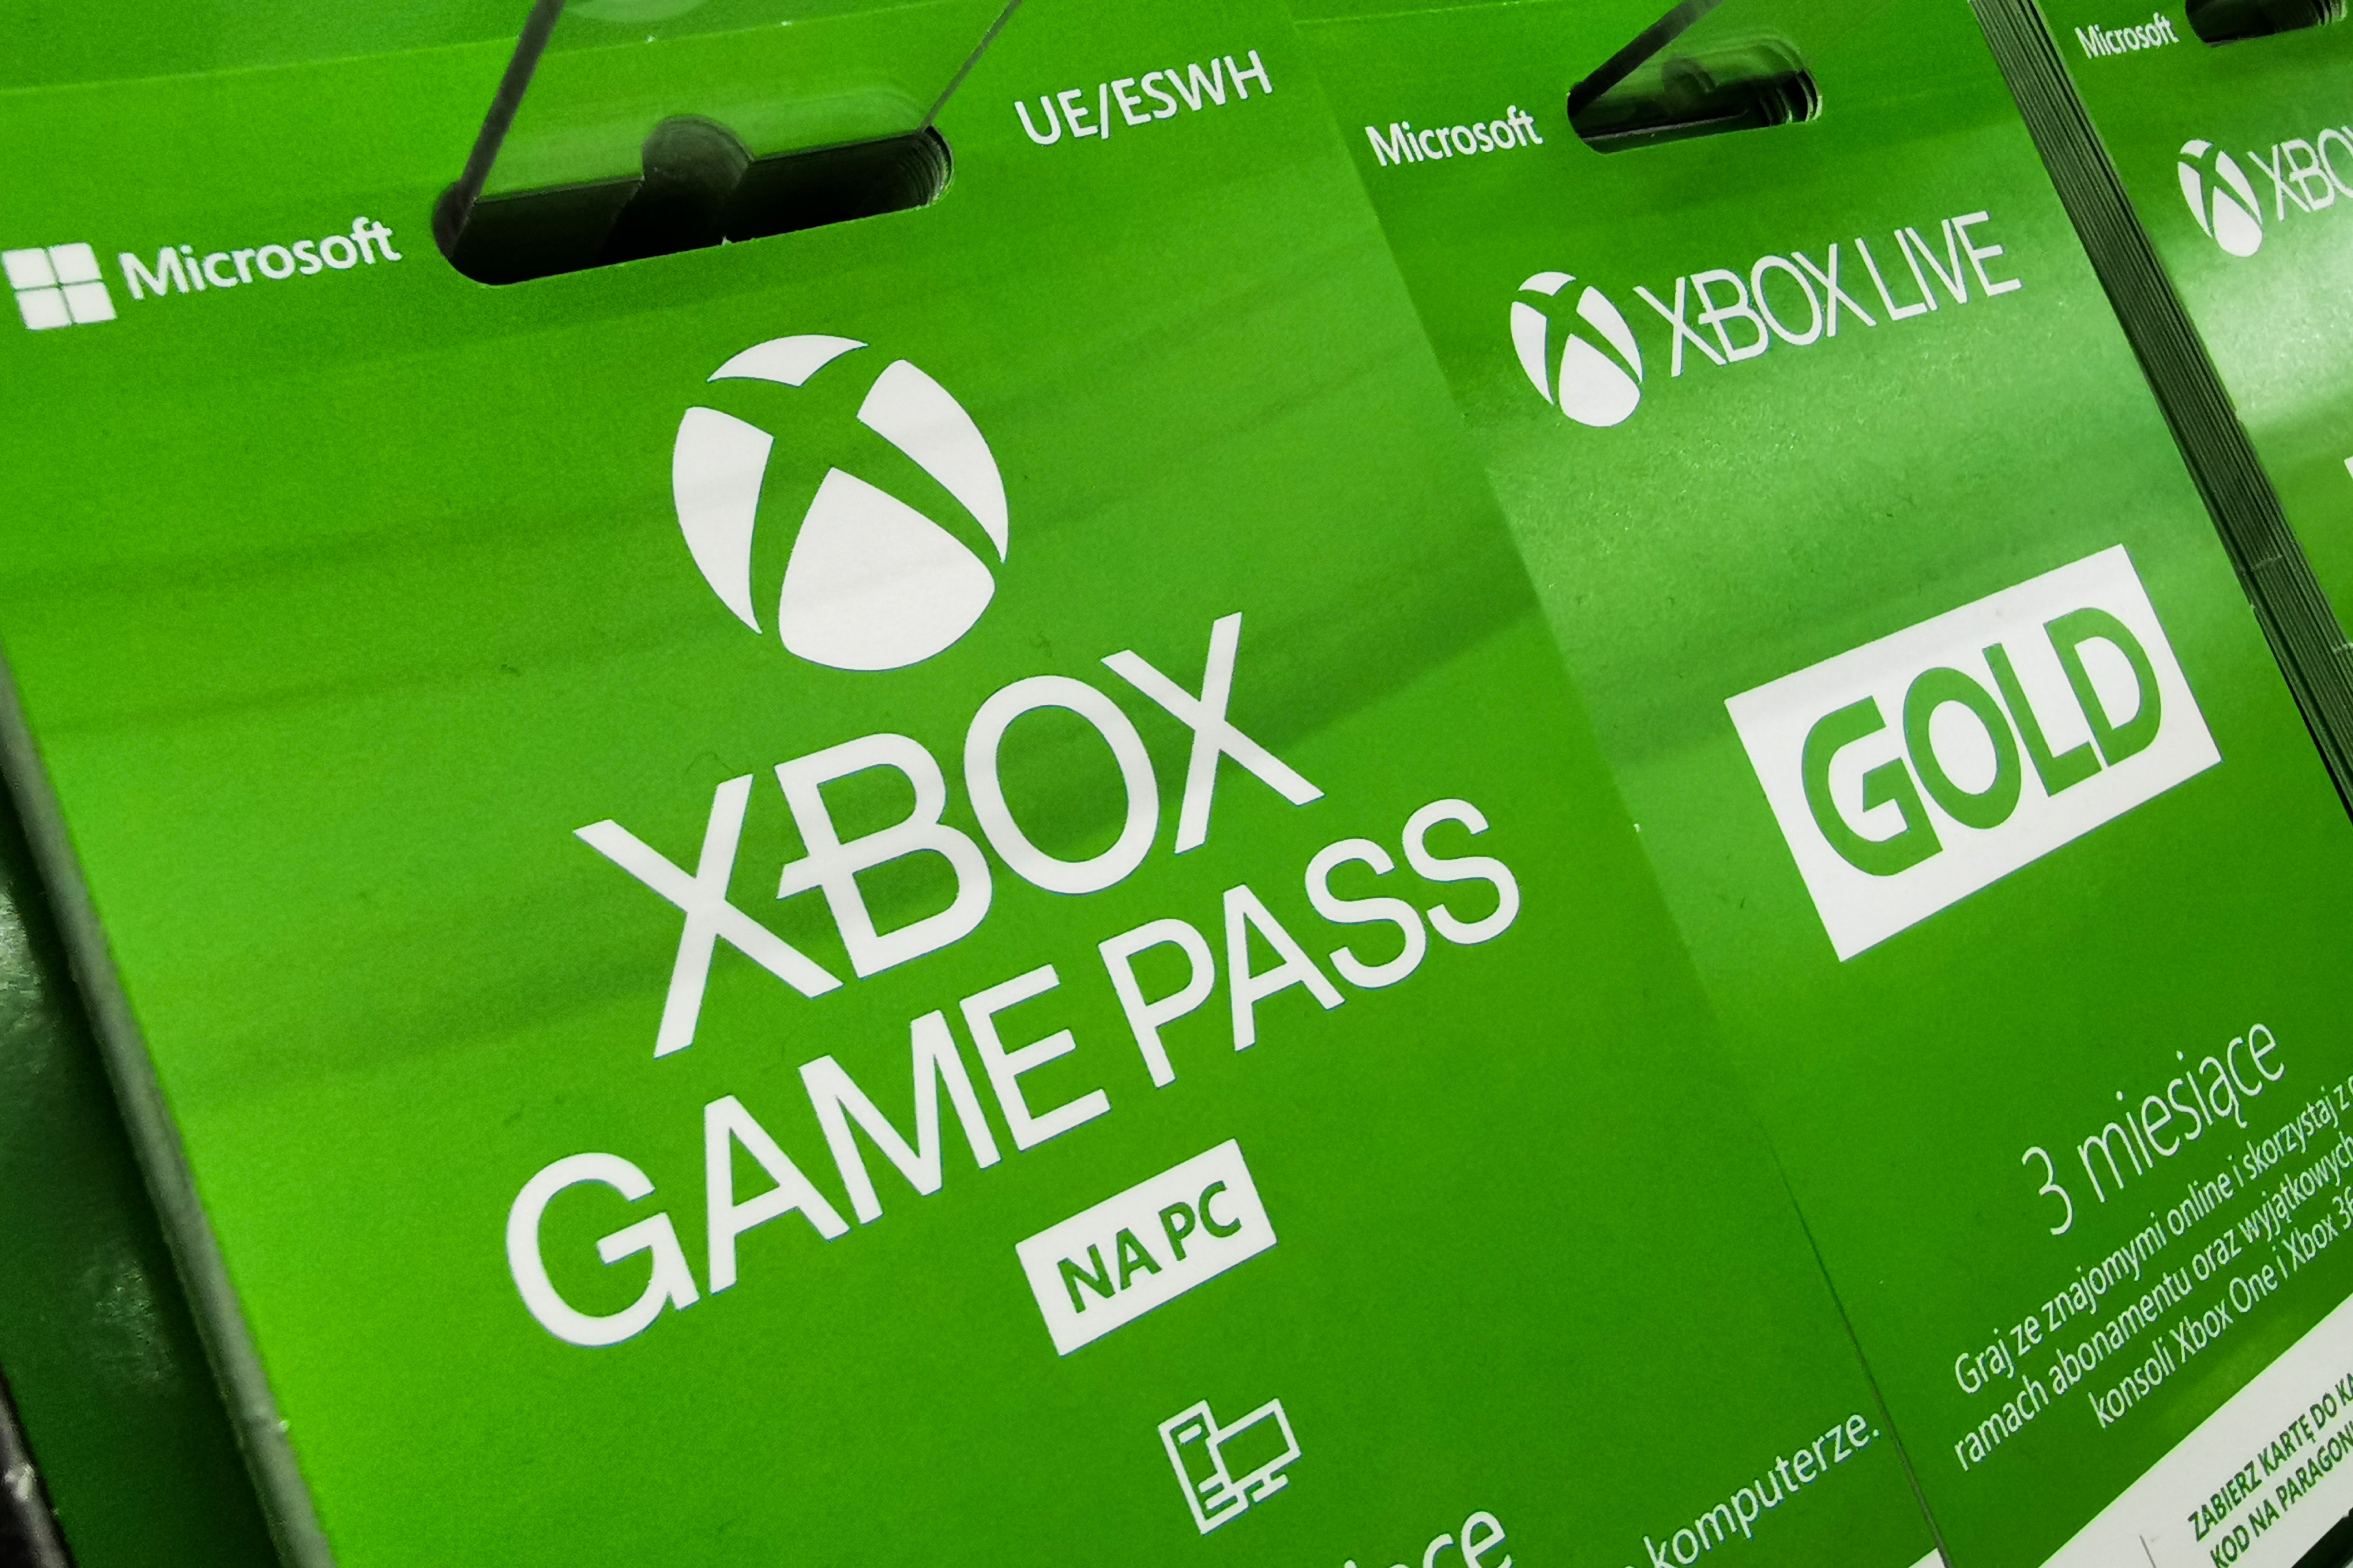 Az Xbox Game Passre nemcsak feltöltőkártyával, hanem online is előfizethetsz. Havi 3000-4000 forintért több száz játékhoz kapsz hozzáférést.